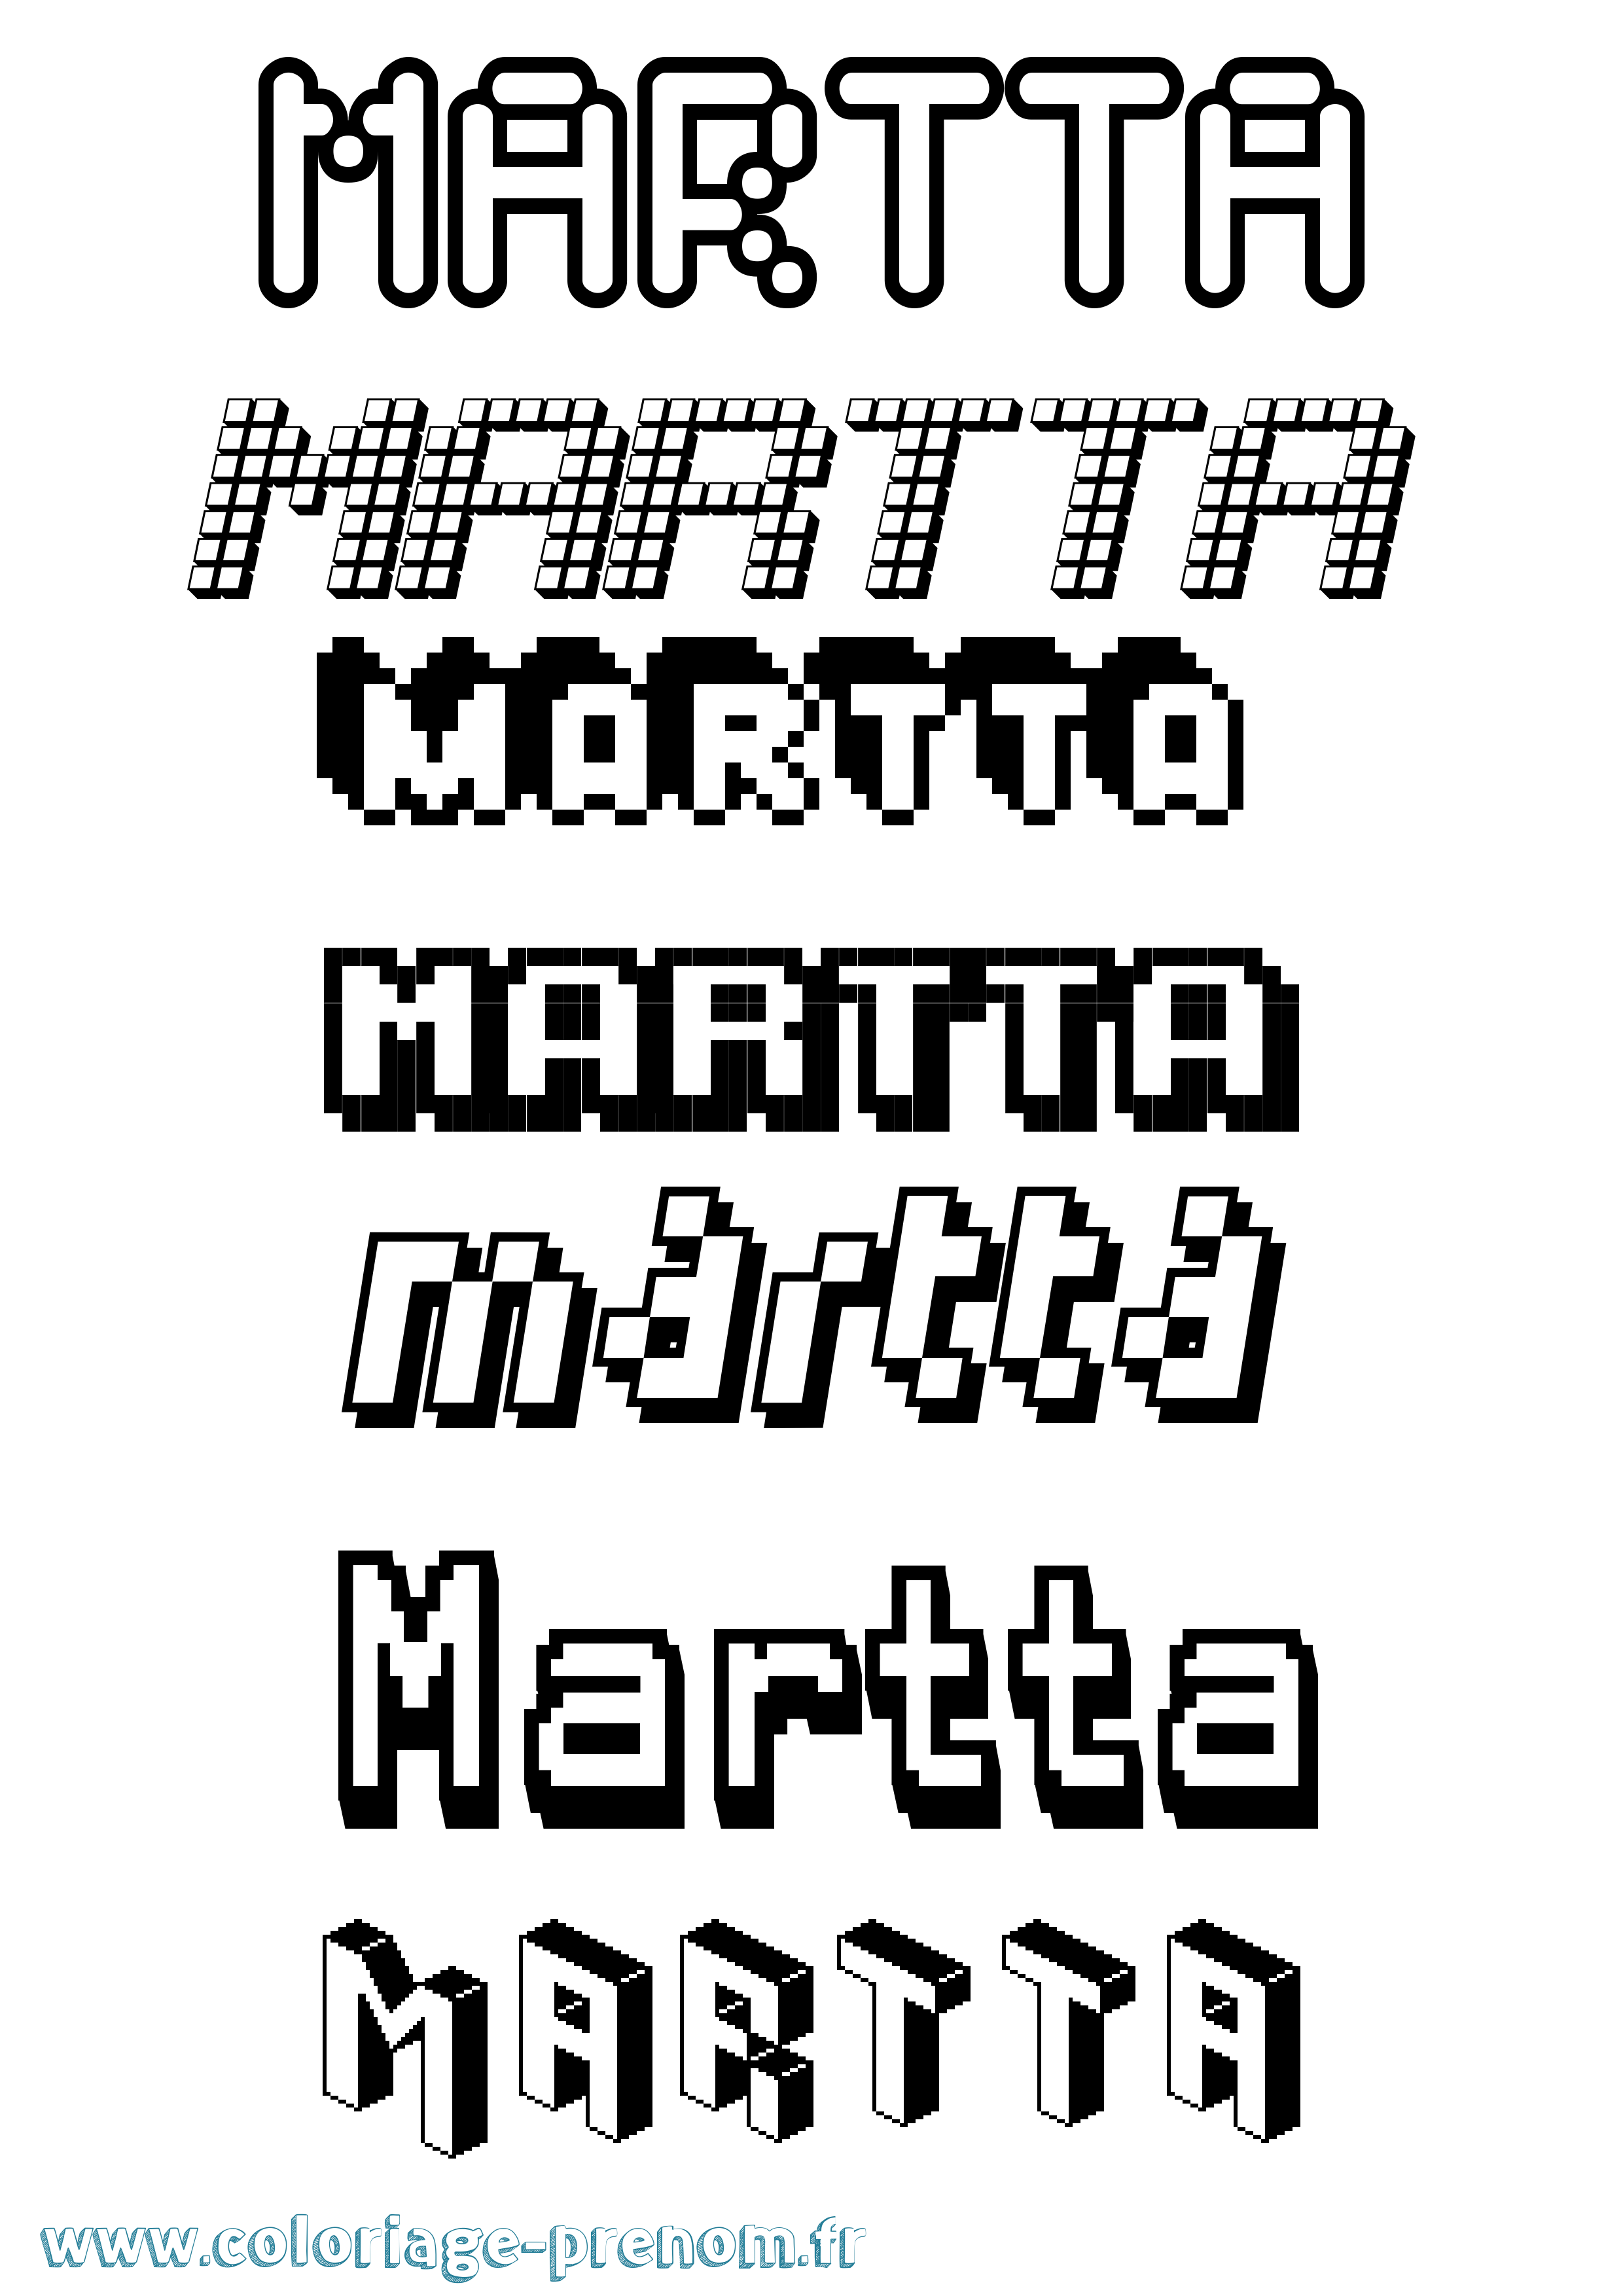 Coloriage prénom Martta Pixel